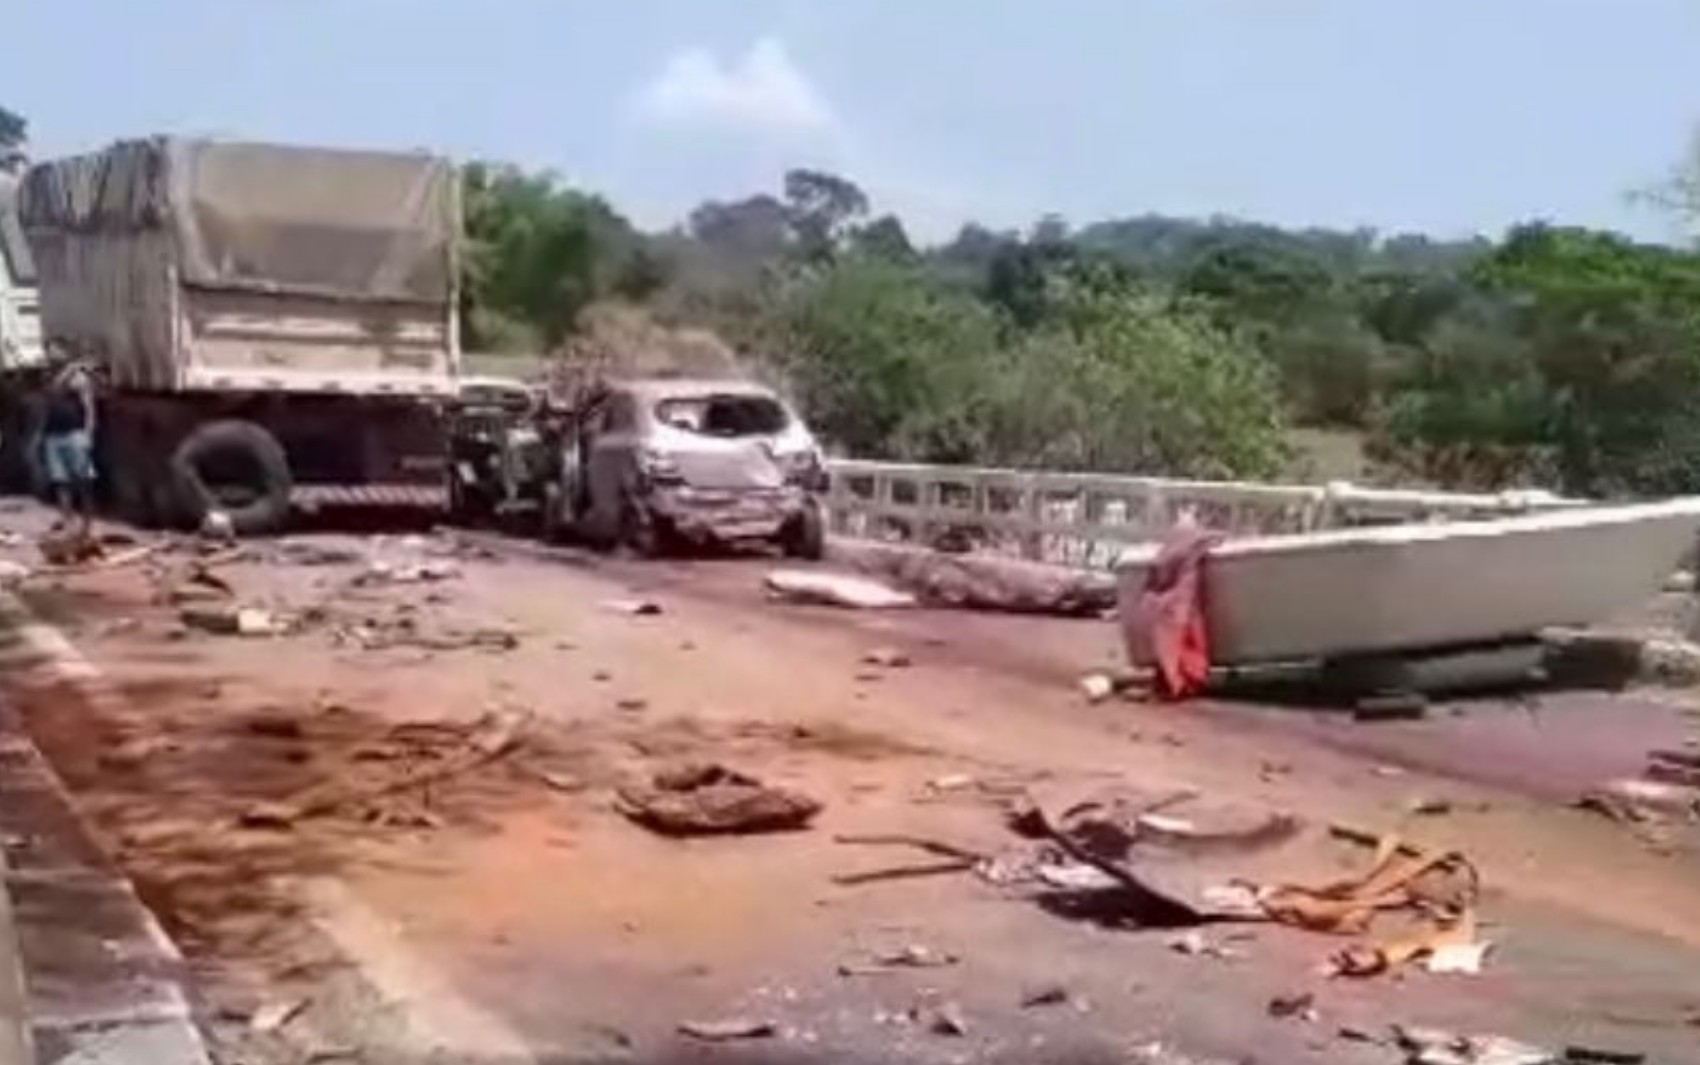 Vídeo mostra destruição de veículos após acidente com mortos e feridos na BR-414